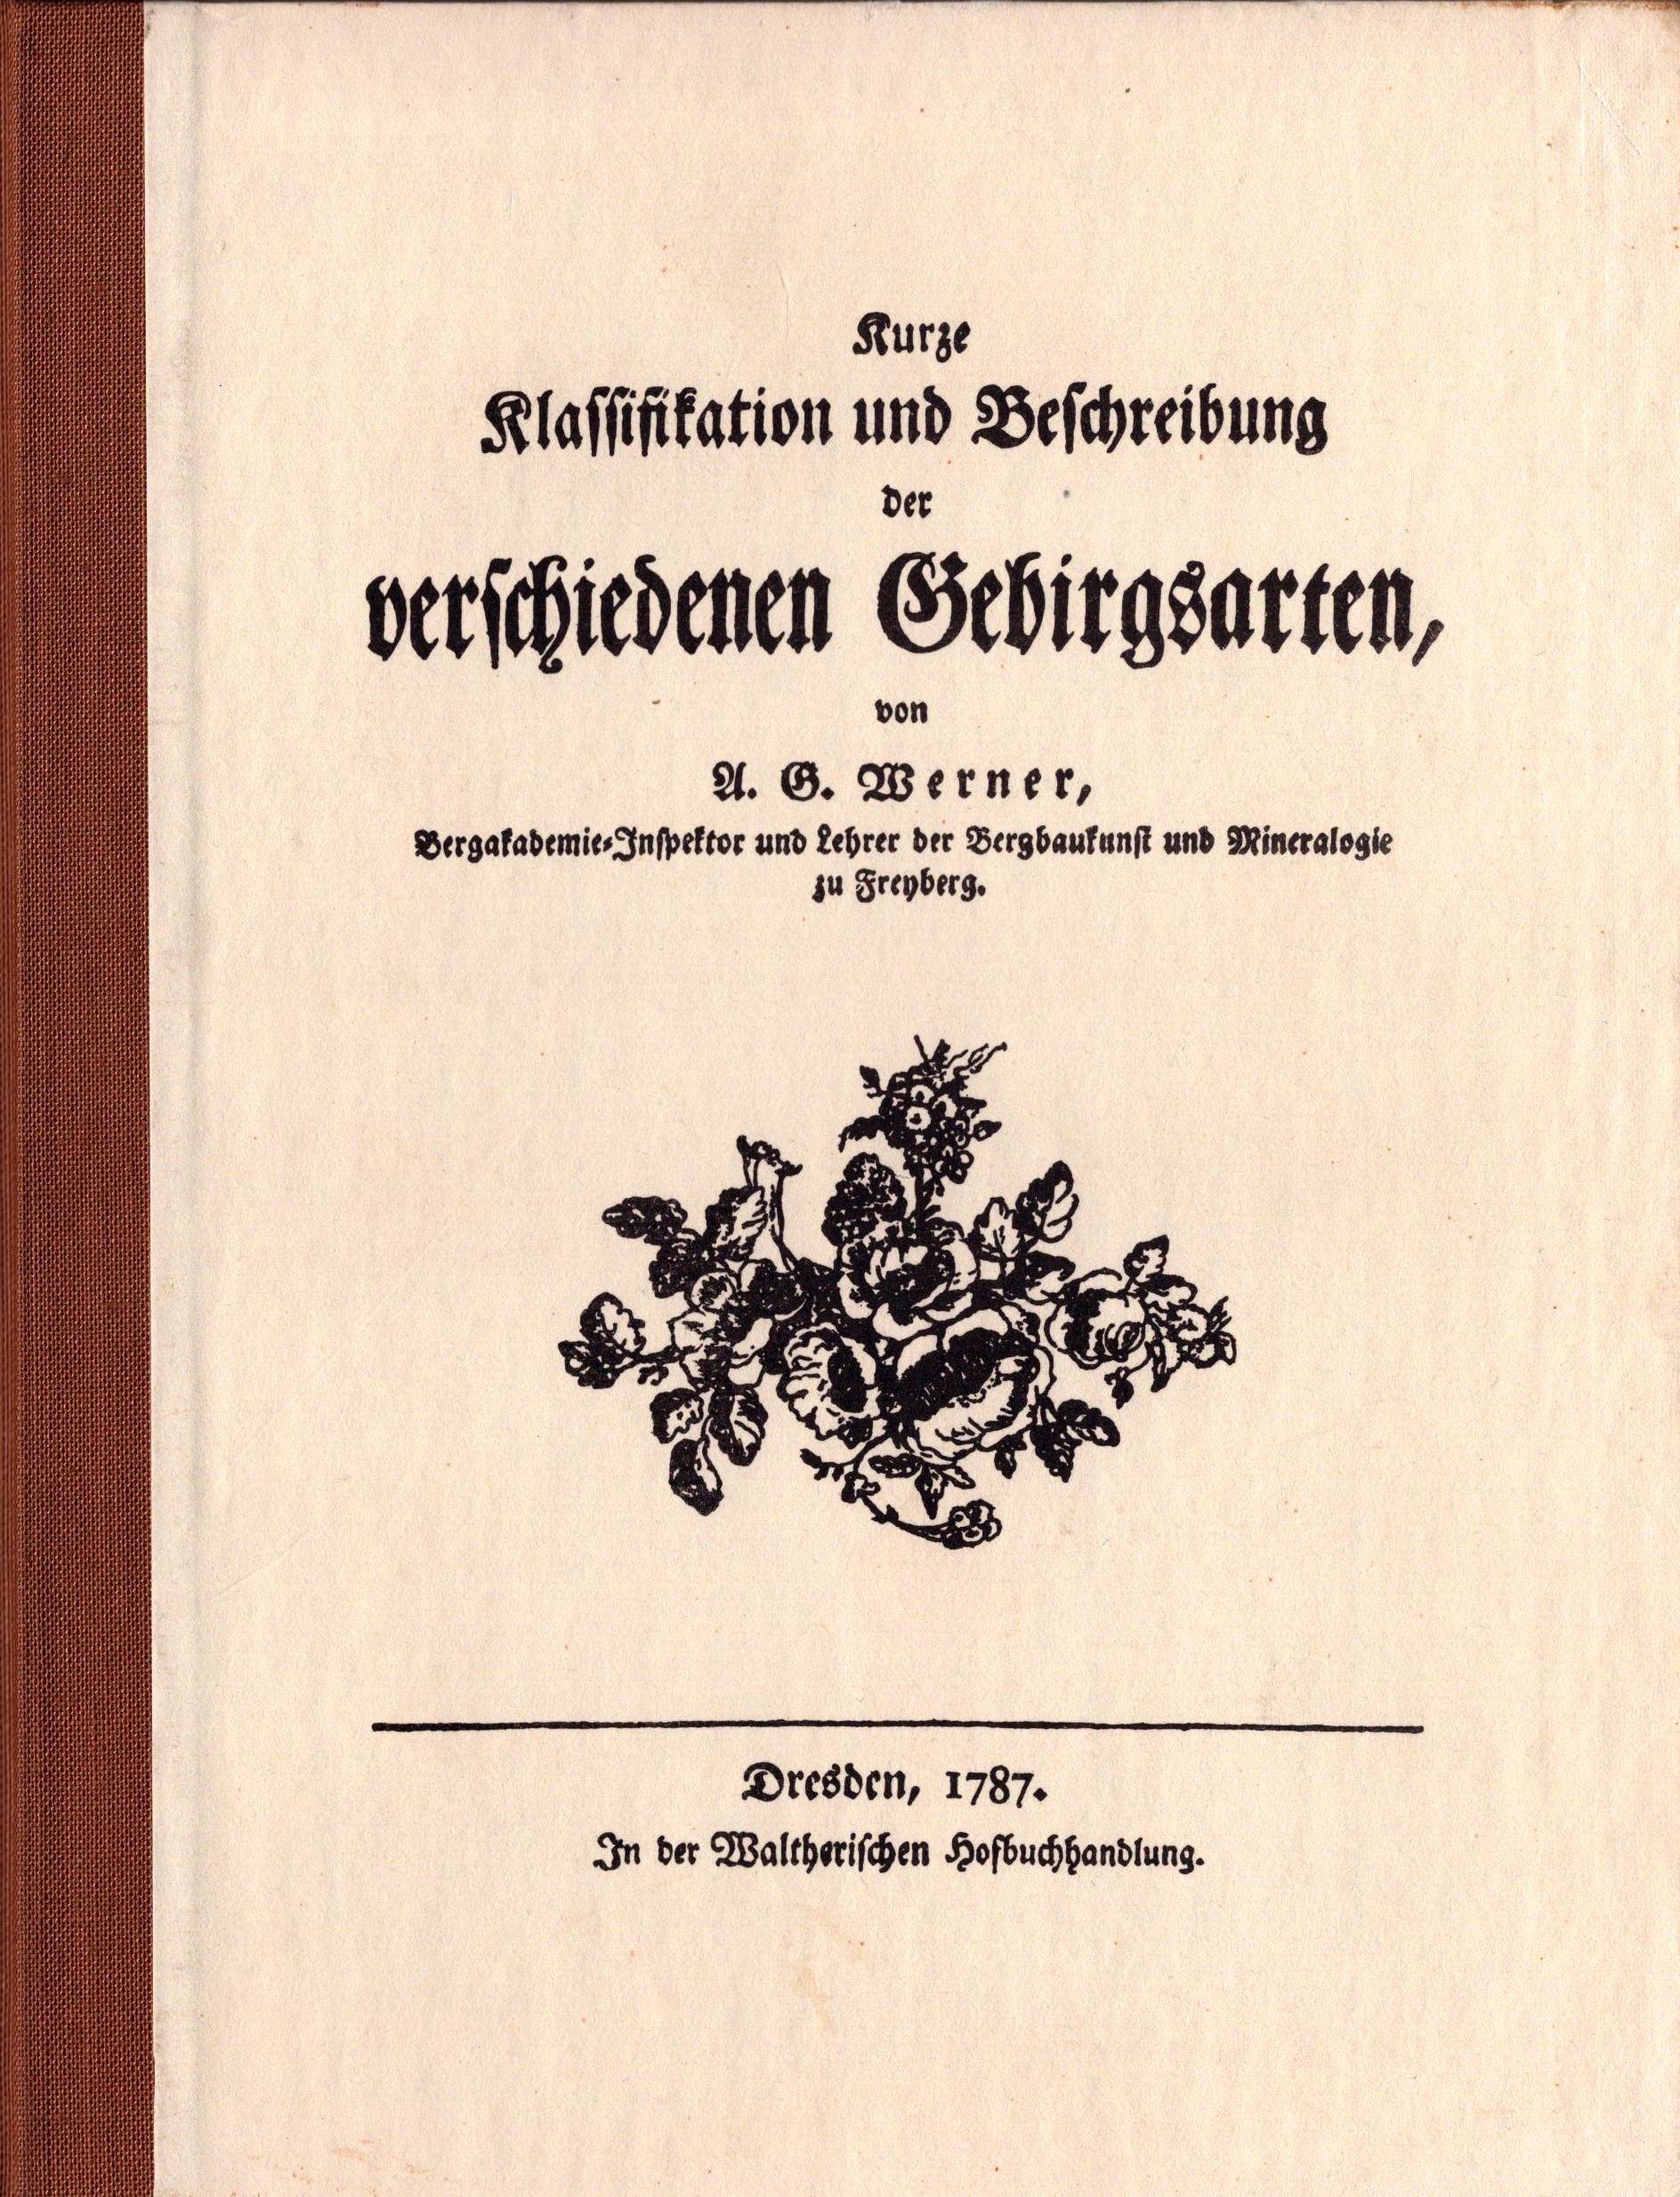 Kurze Klassifikation und Beschreibung der verschiedenen Gebirgsarten (Archiv SAXONIA-FREIBERG-STIFTUNG CC BY-NC-SA)